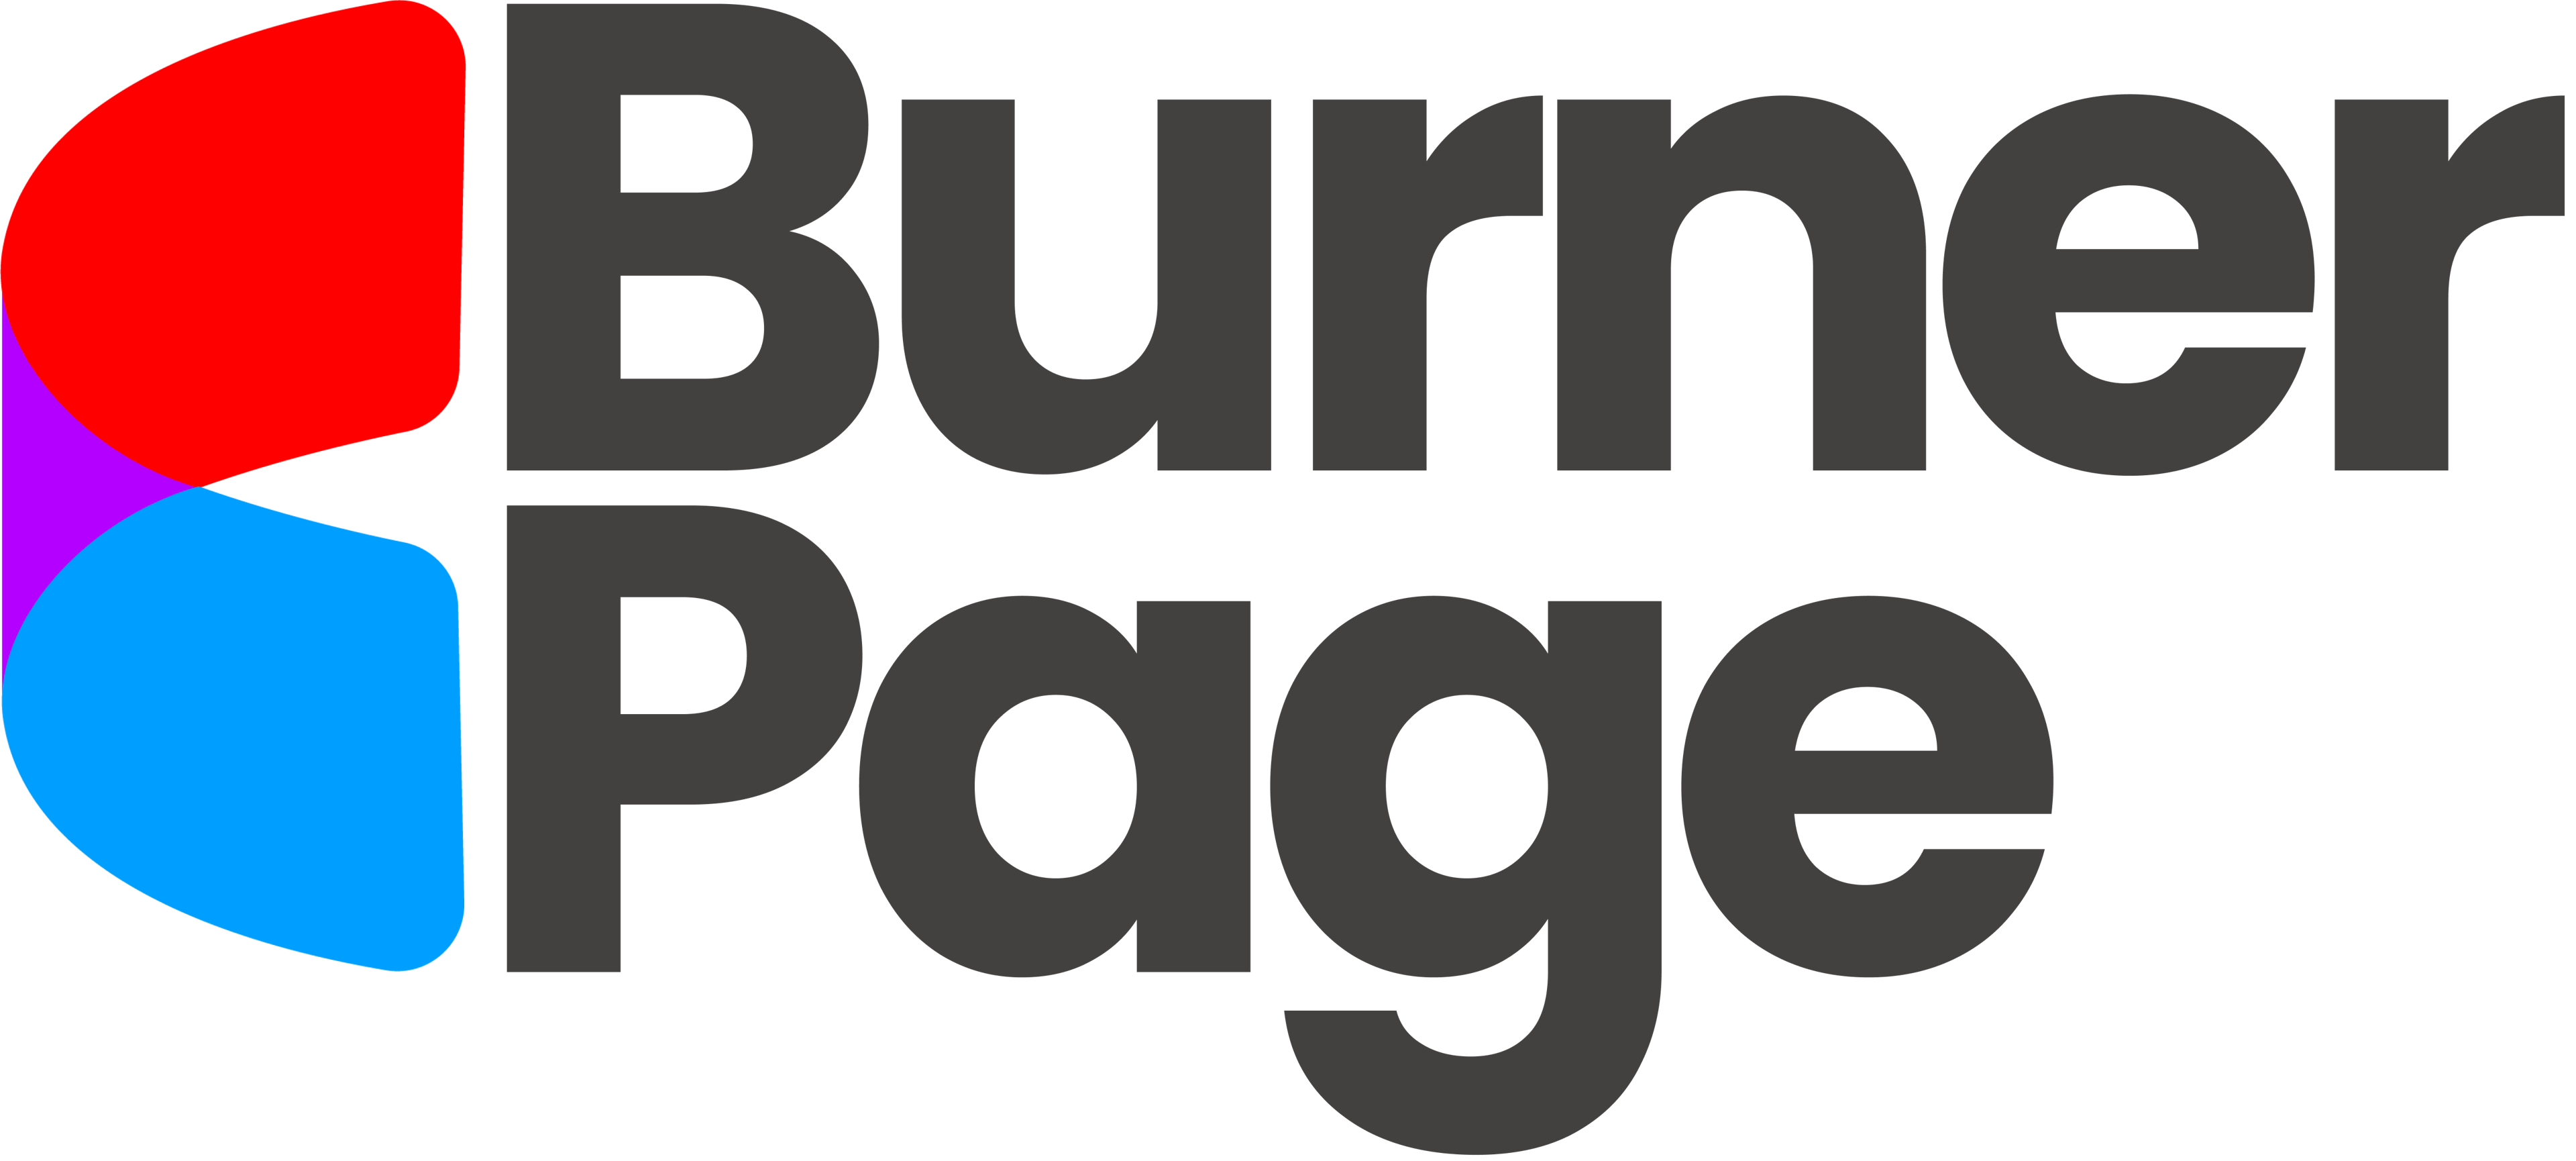 BurnerPage logo